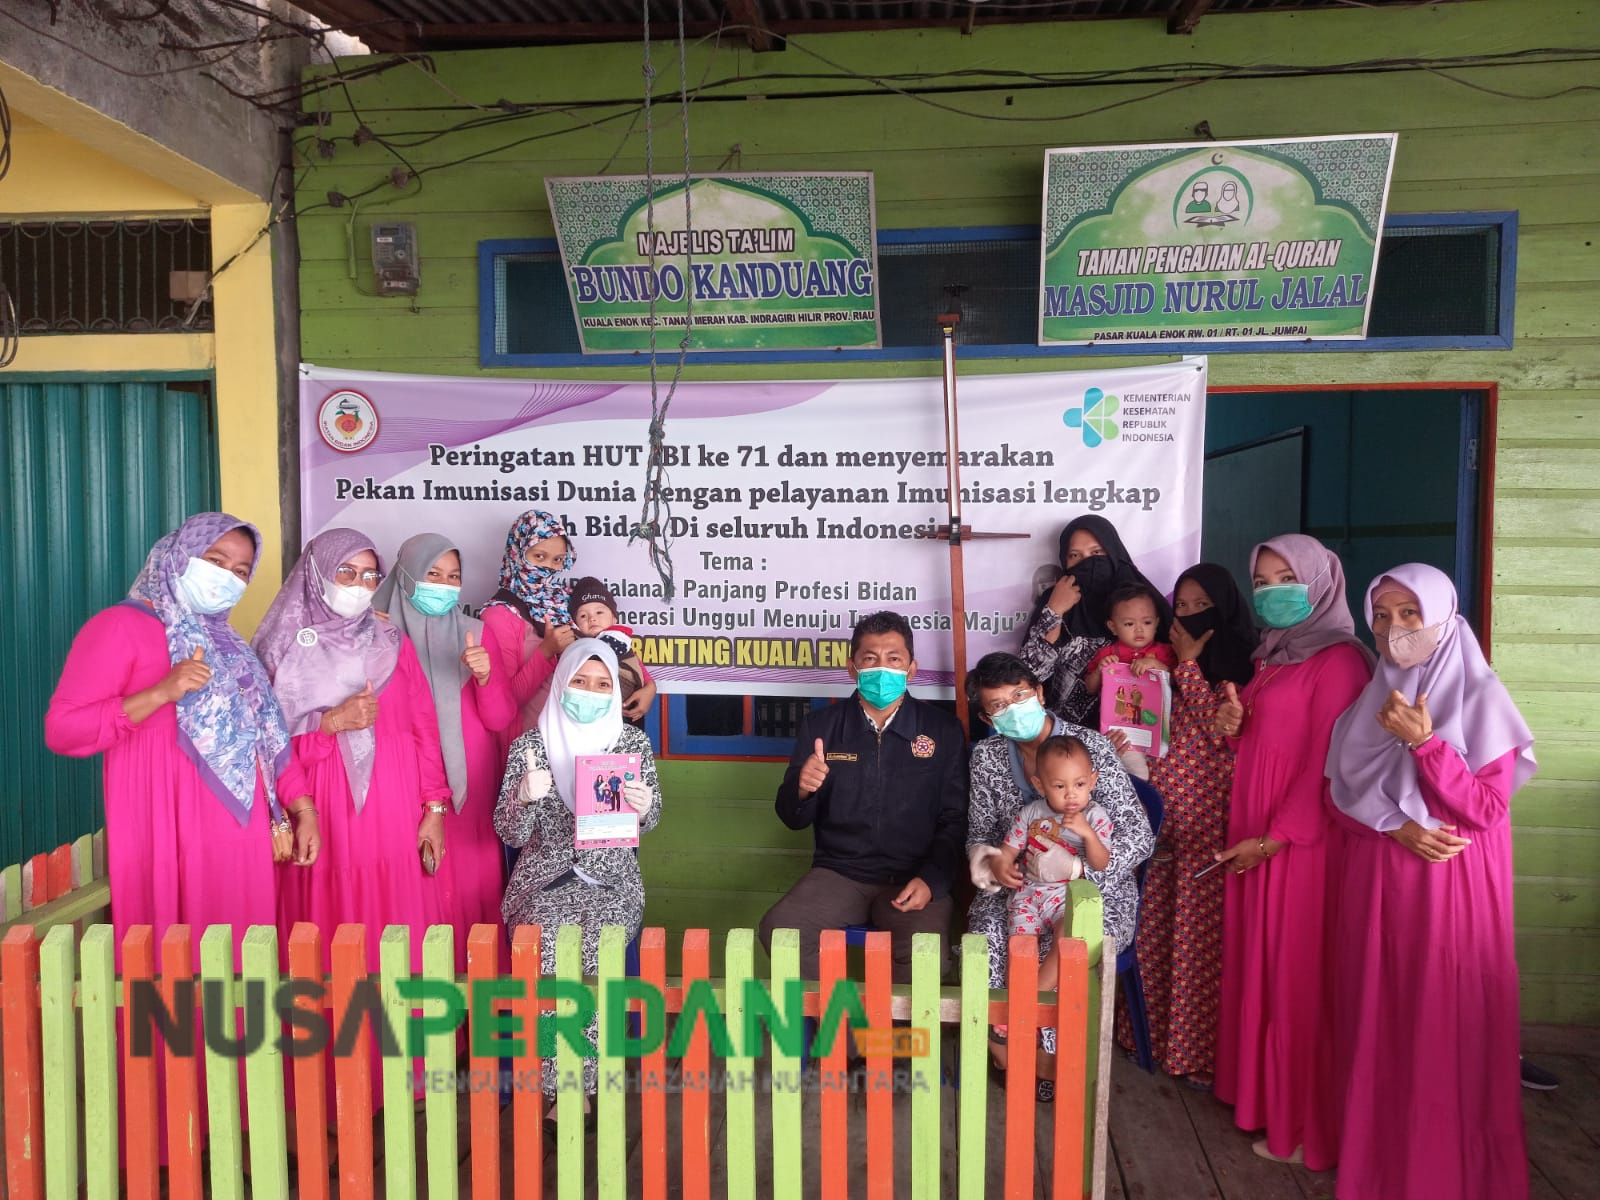 Pekan Imunisasi Dunia, UPT Puskesmas Kuala Enok Bersama IBI Gelar Pekan Imunisasi Rutin Lengkap